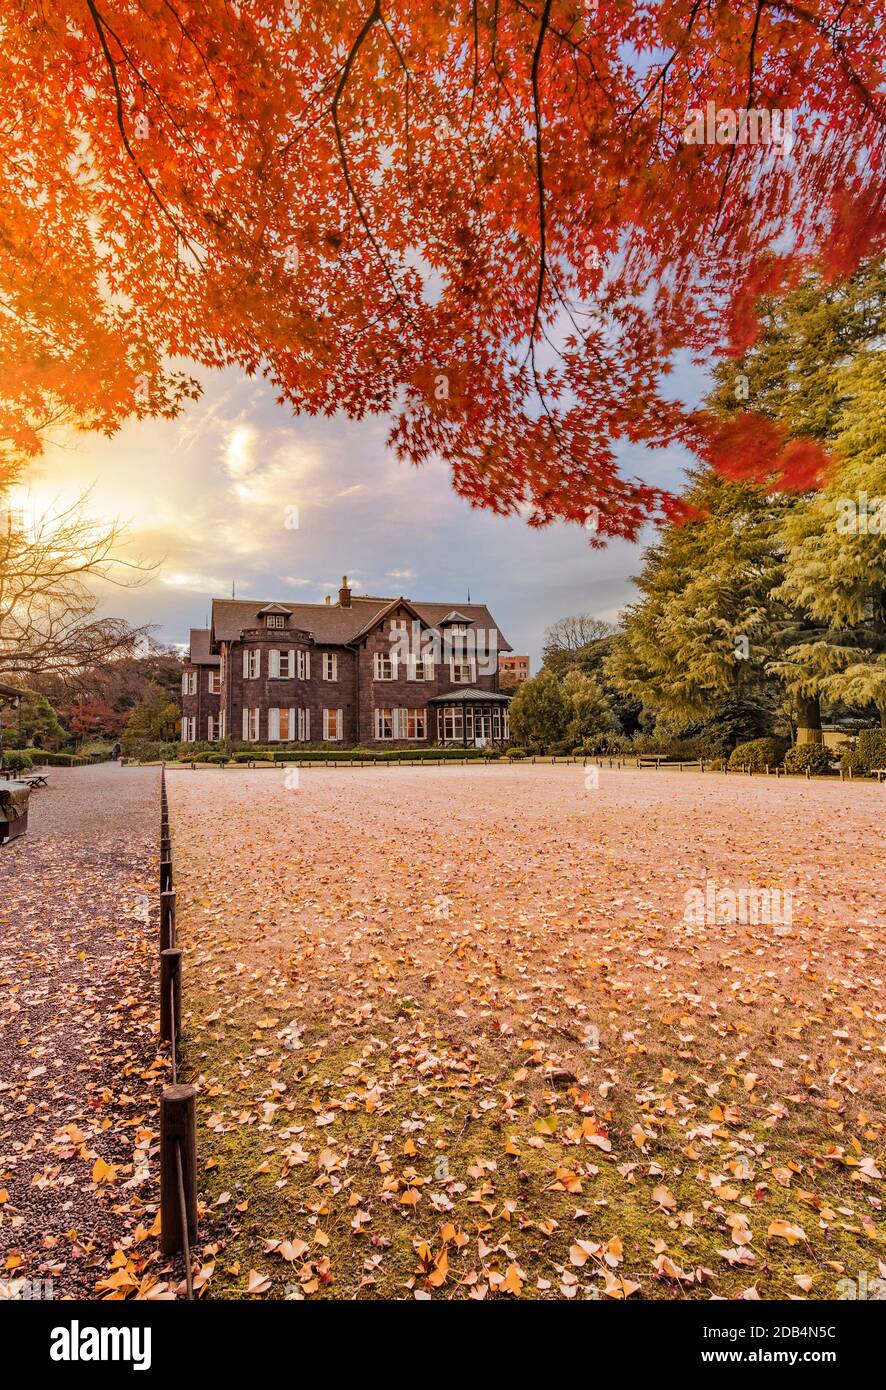 Sonnenuntergang im Tokyo Metropolitan Park KyuFurukawas altes Herrenhaus im westlichen Stil am roten Ahorn Momiji verlässt die Saison im Herbst. Stockfoto